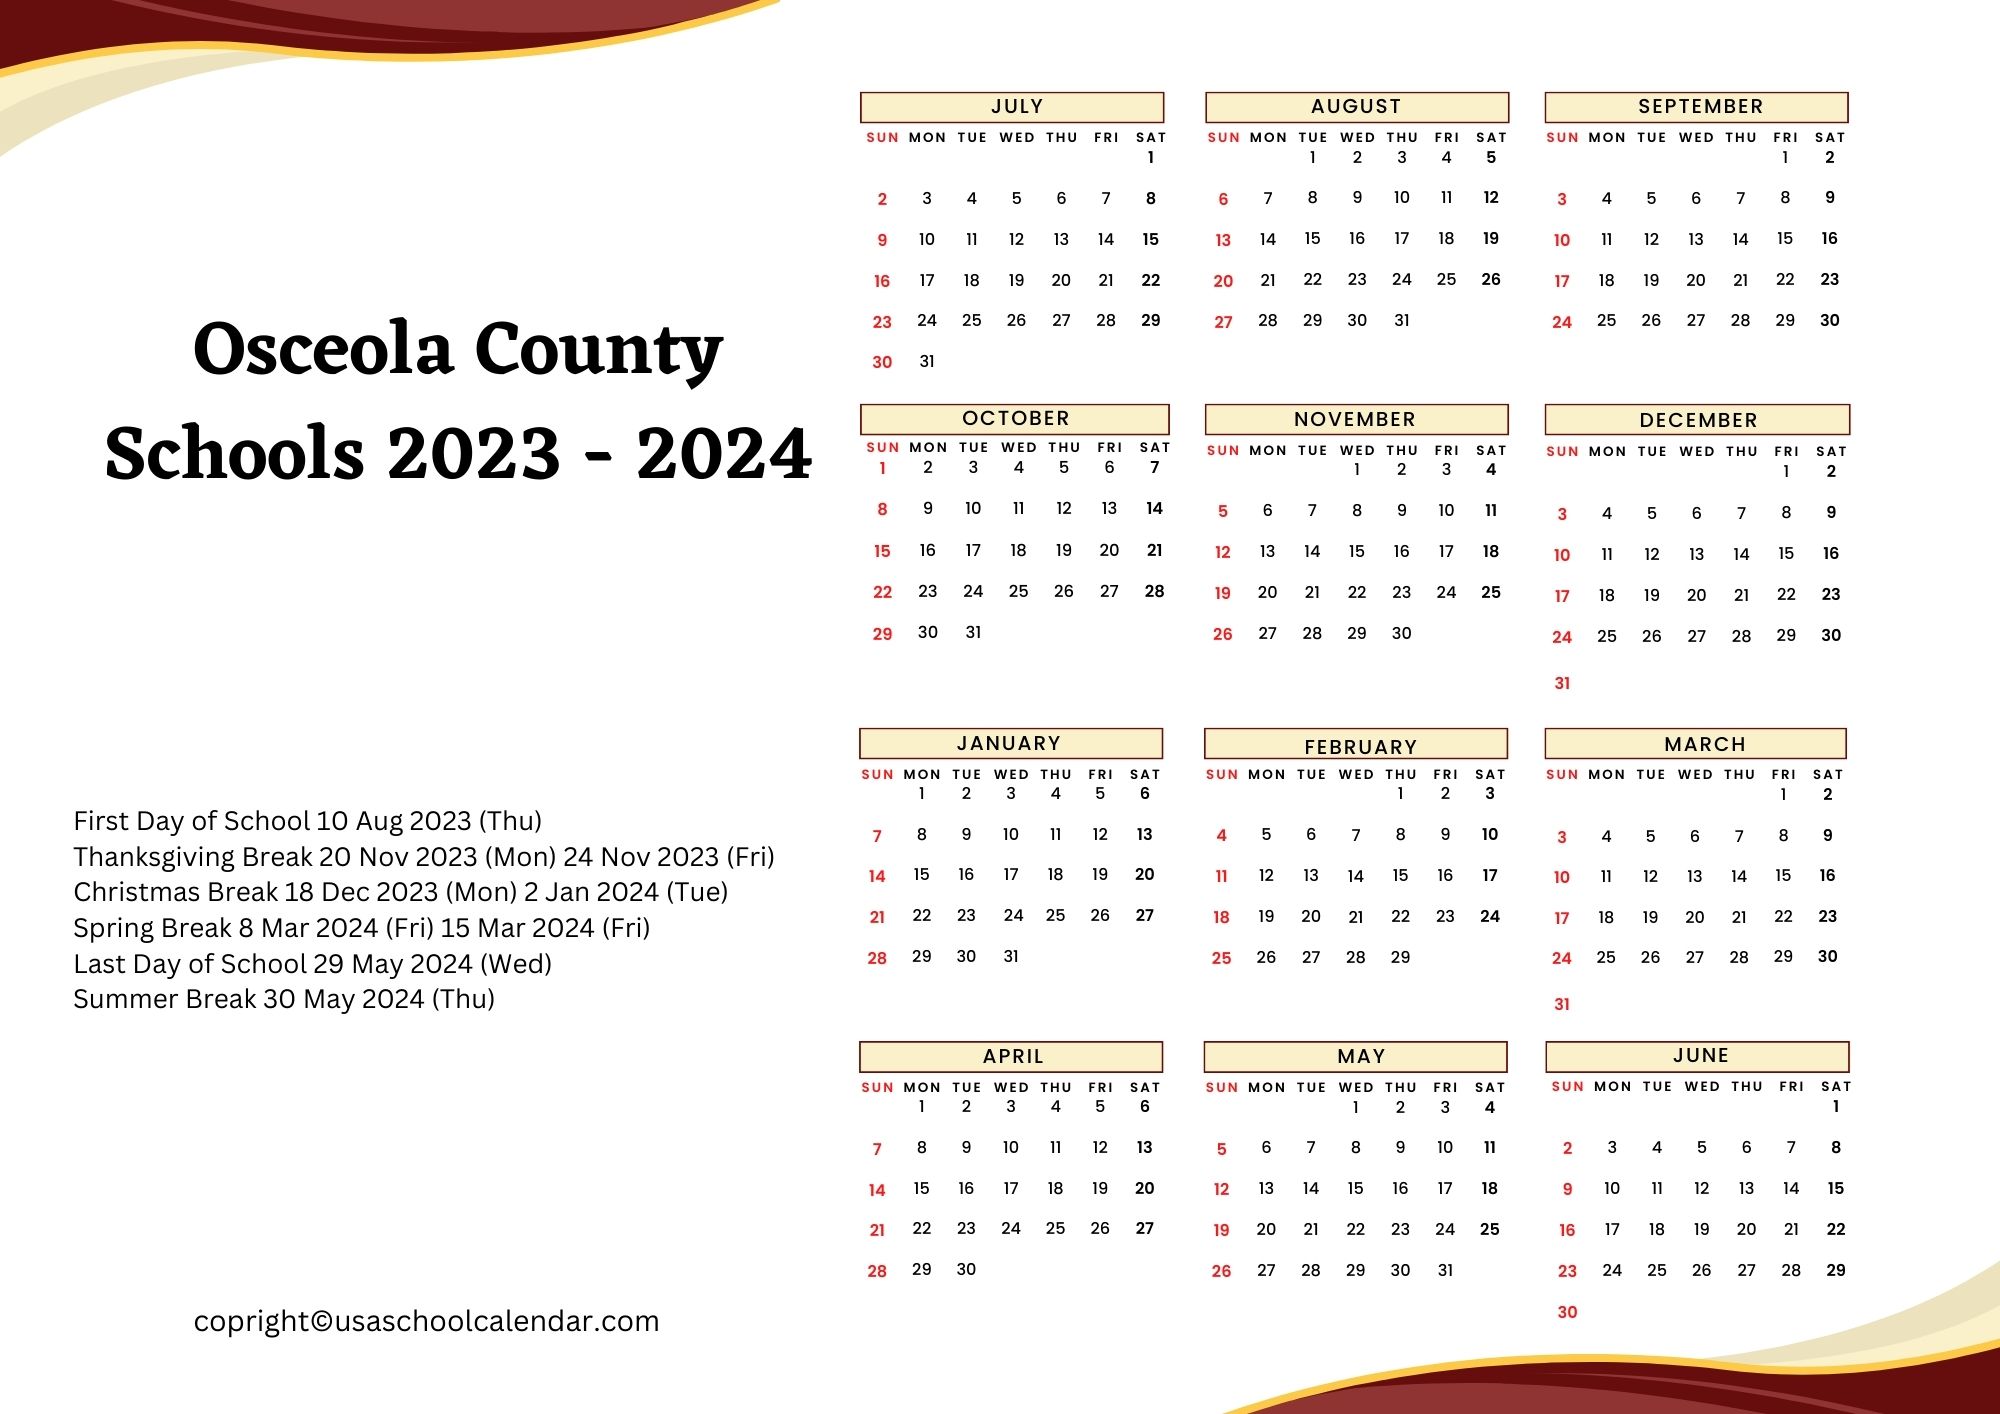 osceola-county-school-calendar-holidays-2023-2024